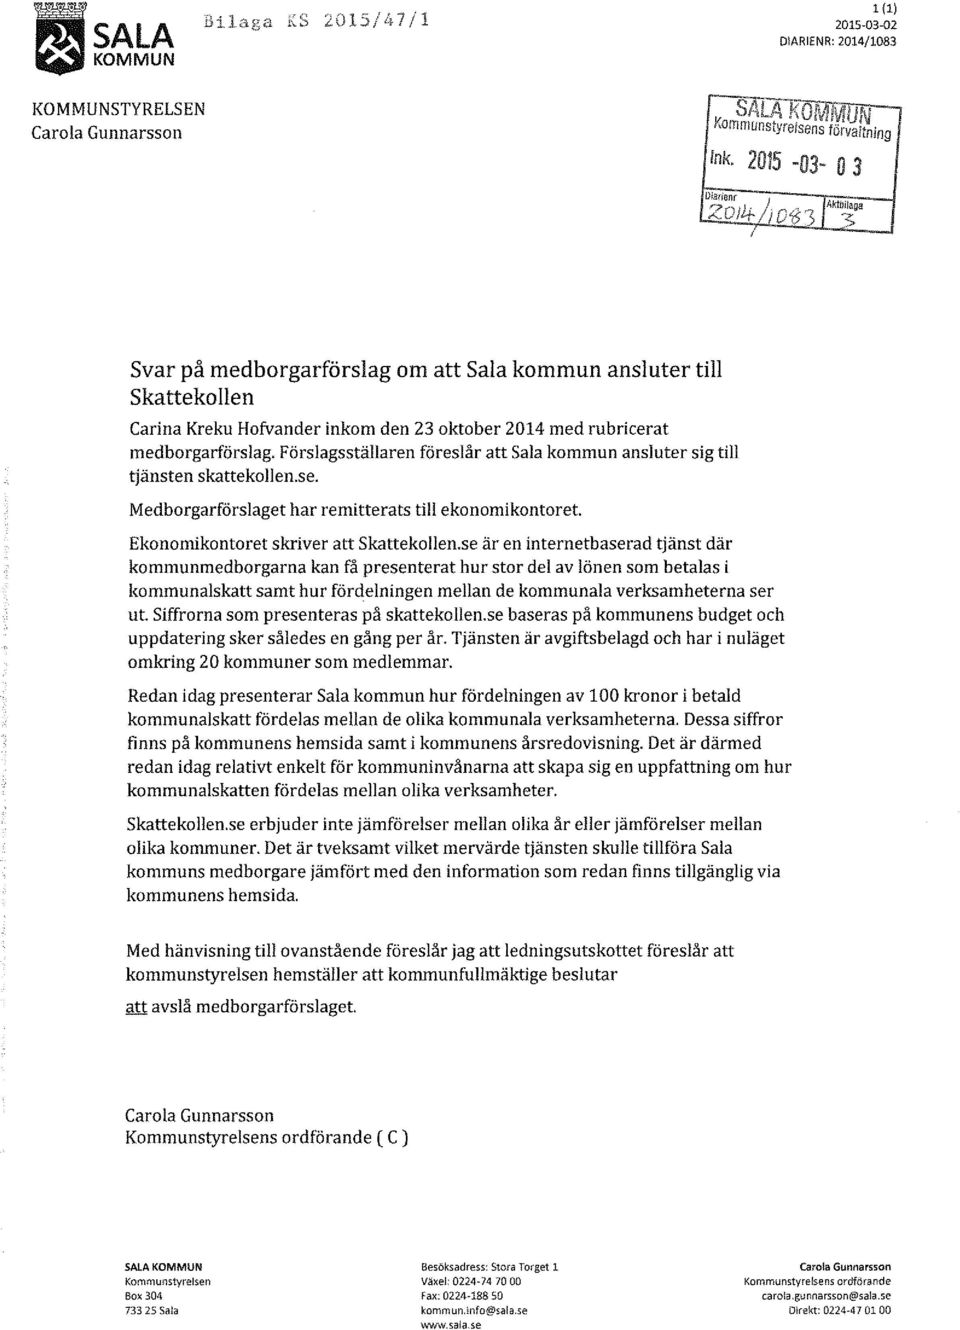 Förslagsställaren föreslår att Sala kommun ansluter sig till tjänsten skattekollen.se. Medborgarförslaget har remitterats till ekonomikontoret Ekonomikontoret skriver att Skattekollen.